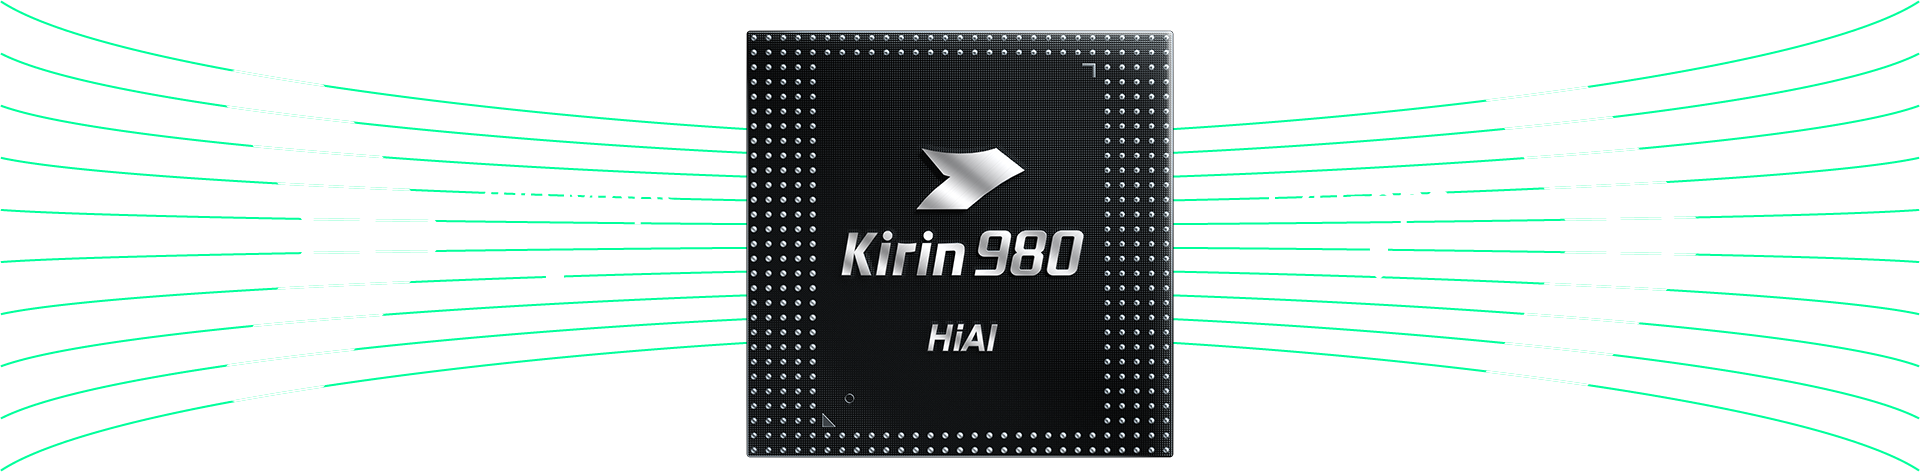 Kirin 980 Network